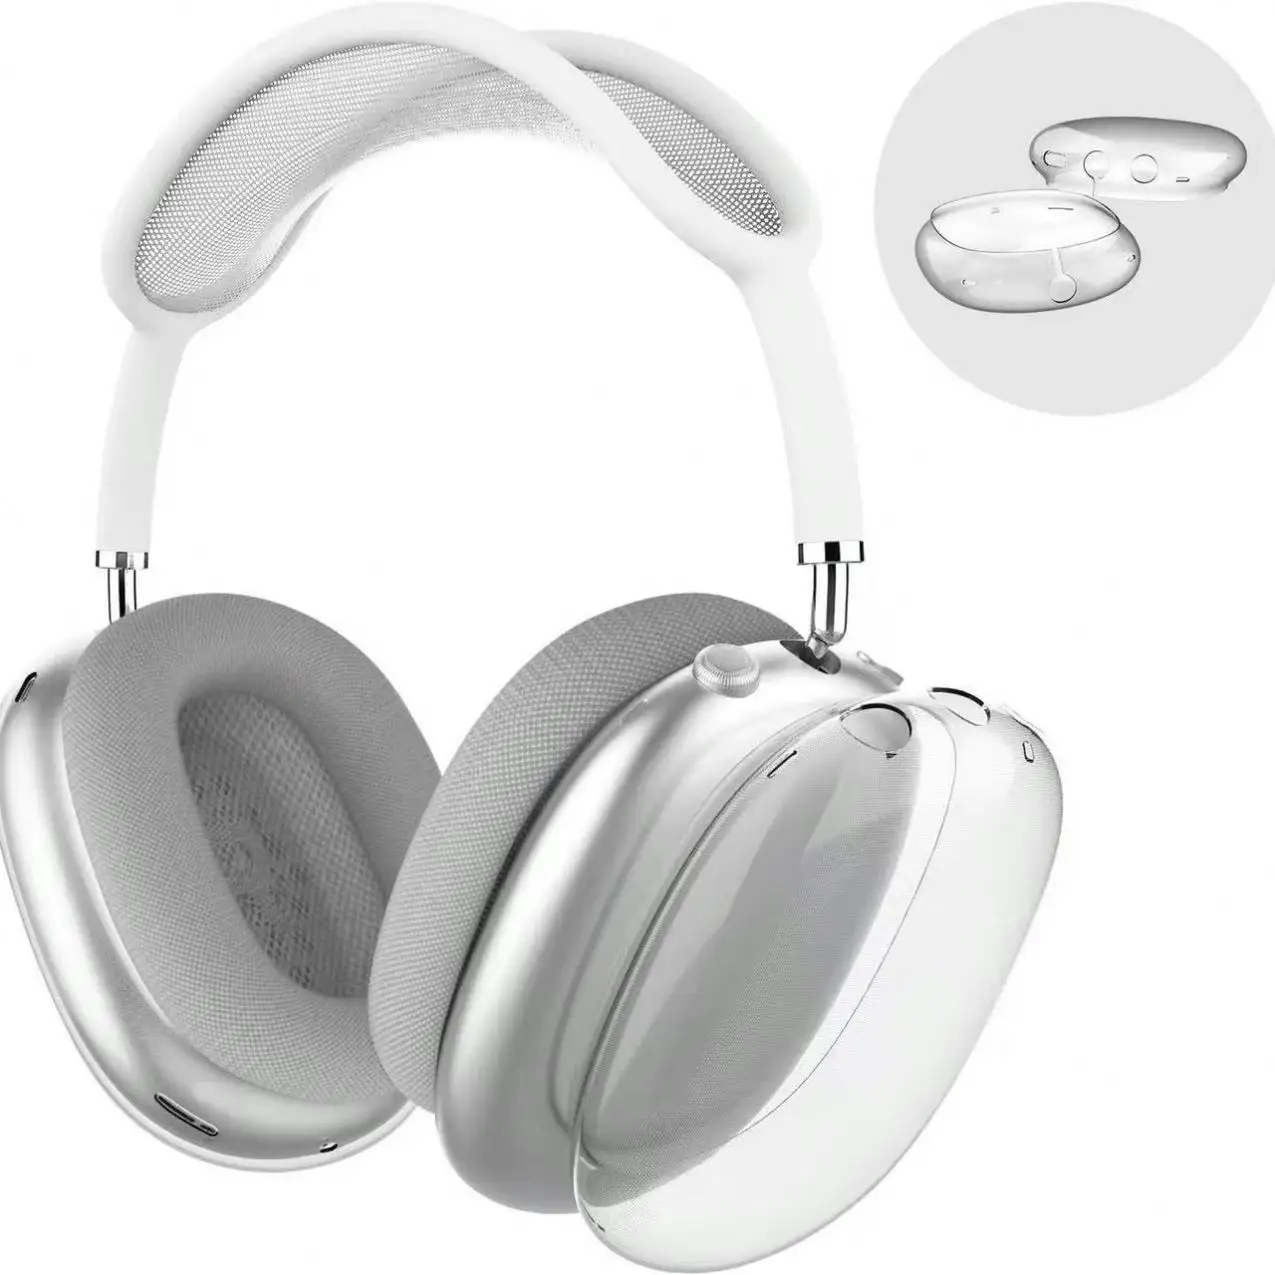 כיסוי אוזניות סיליקון מגן מלא TPU מהדורה חדשה ל-Airpods Pro 2nd כיסוי מובנה מגף חסין לכלוך עם קרבינר מתכת